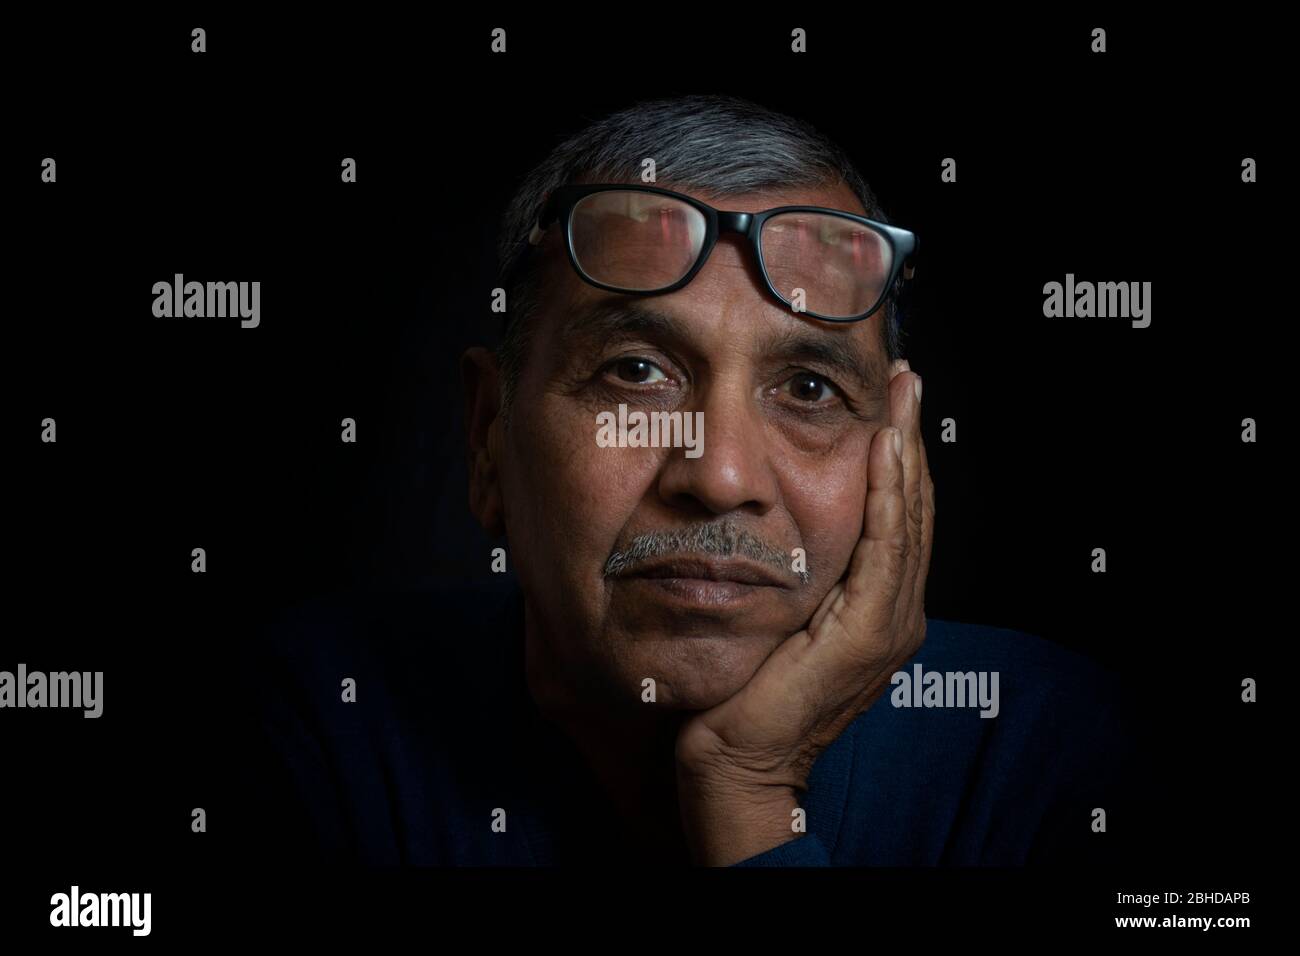 Close up portrait of thinking senior man on black background Stock Photo